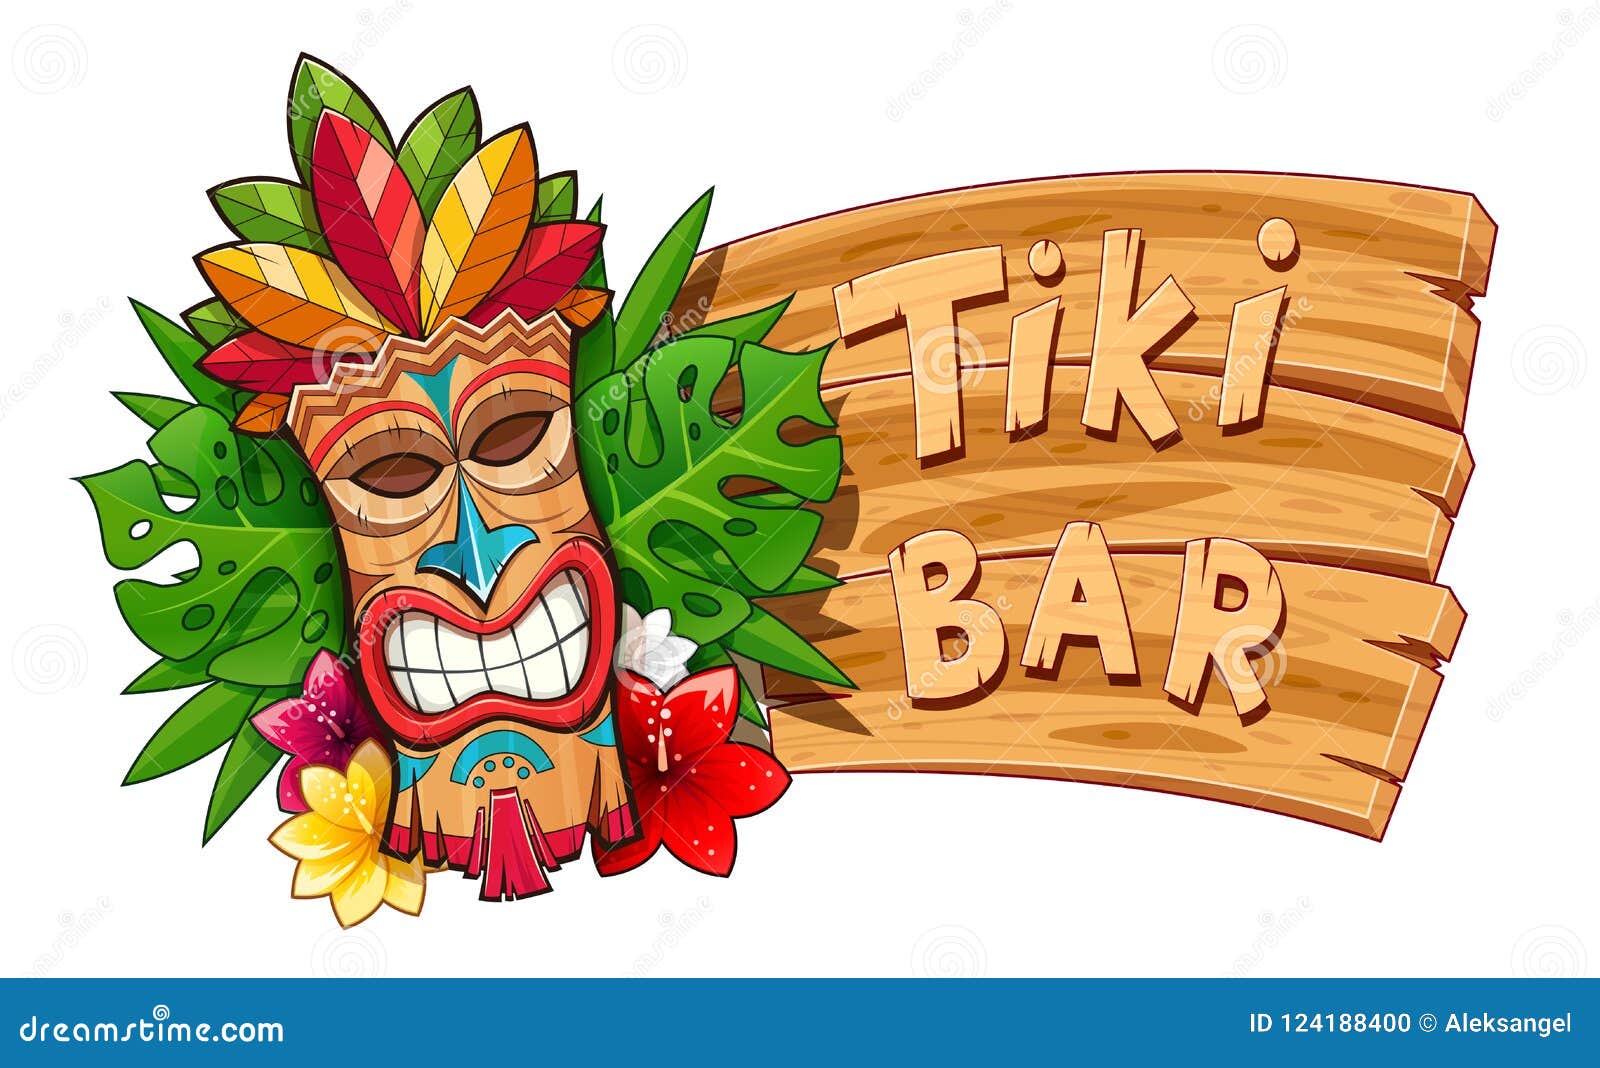 tiki tribal wooden mask. hawaiian traditional character